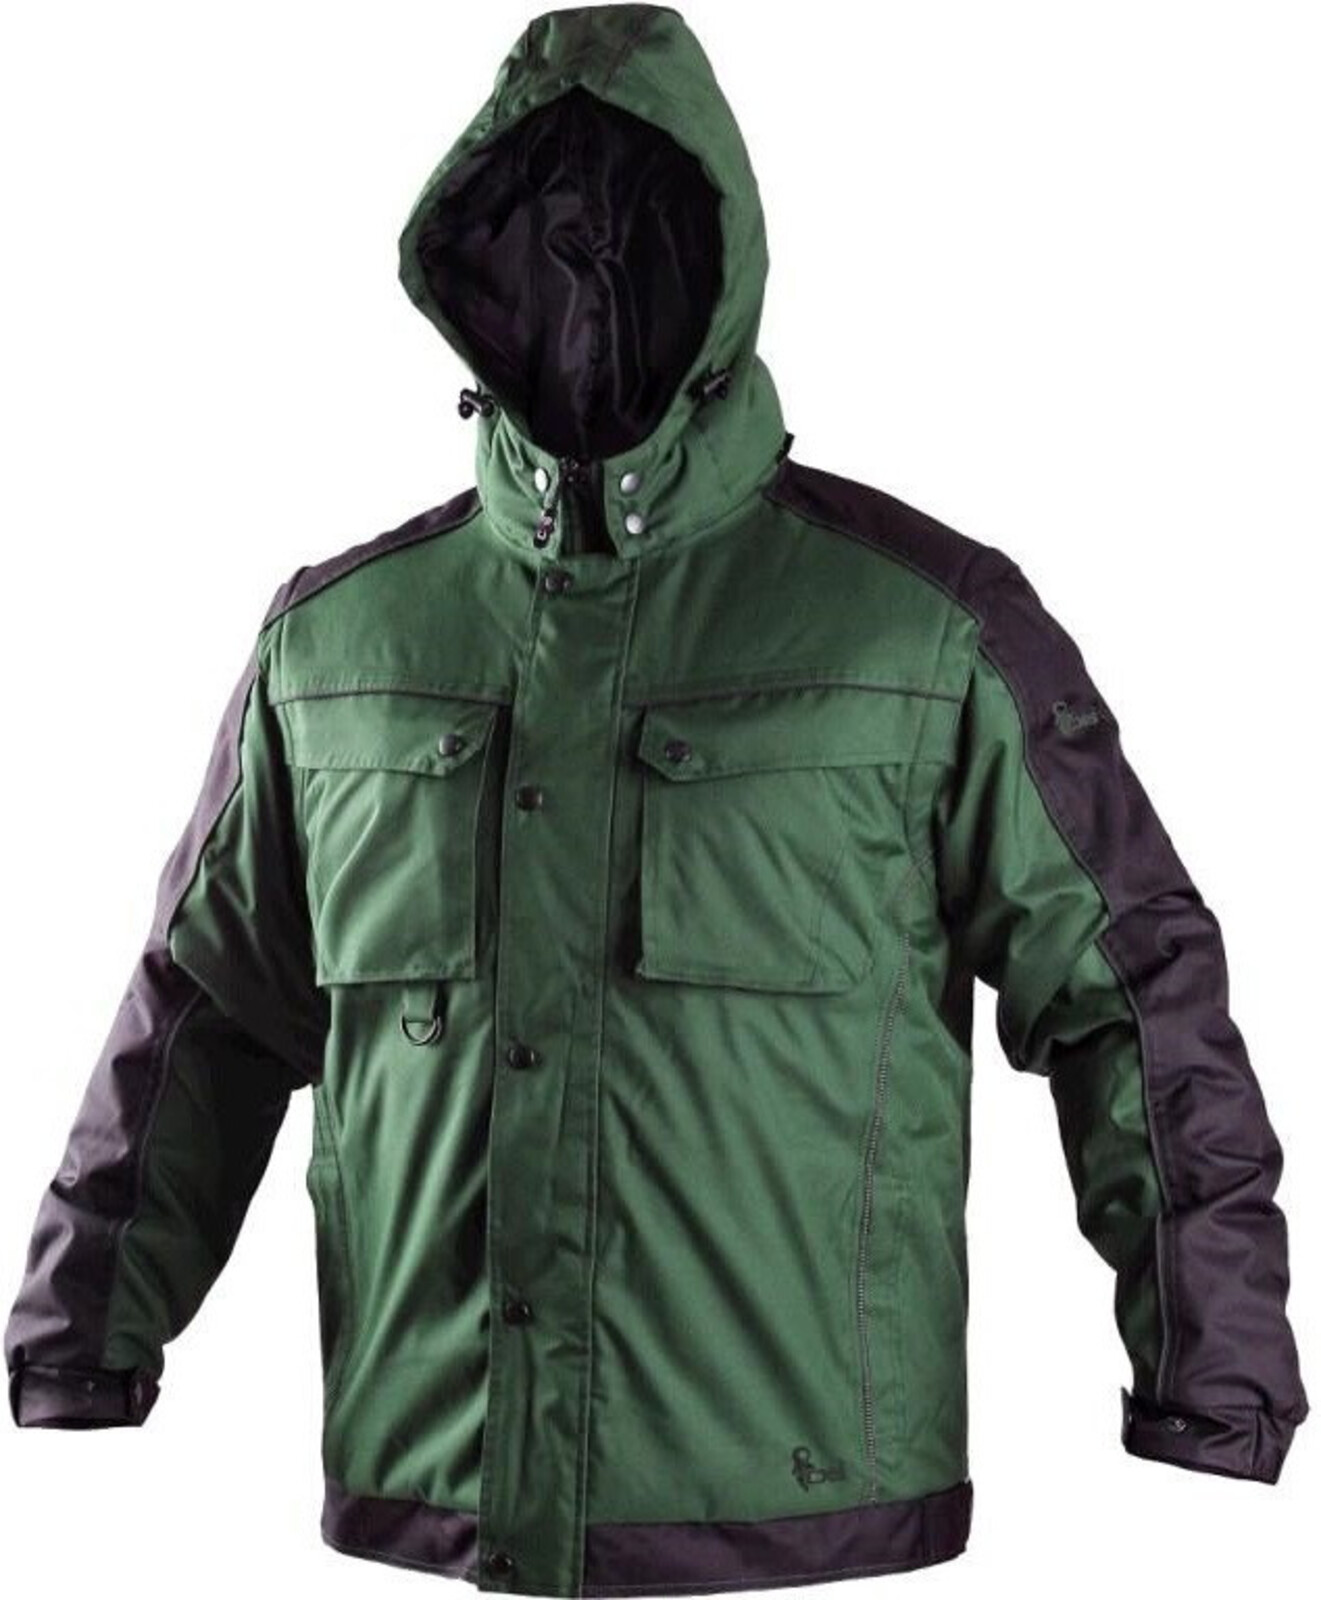 Pánska zimná bunda CXS Irvine 2v1 - veľkosť: 4XL, farba: zelená/čierna